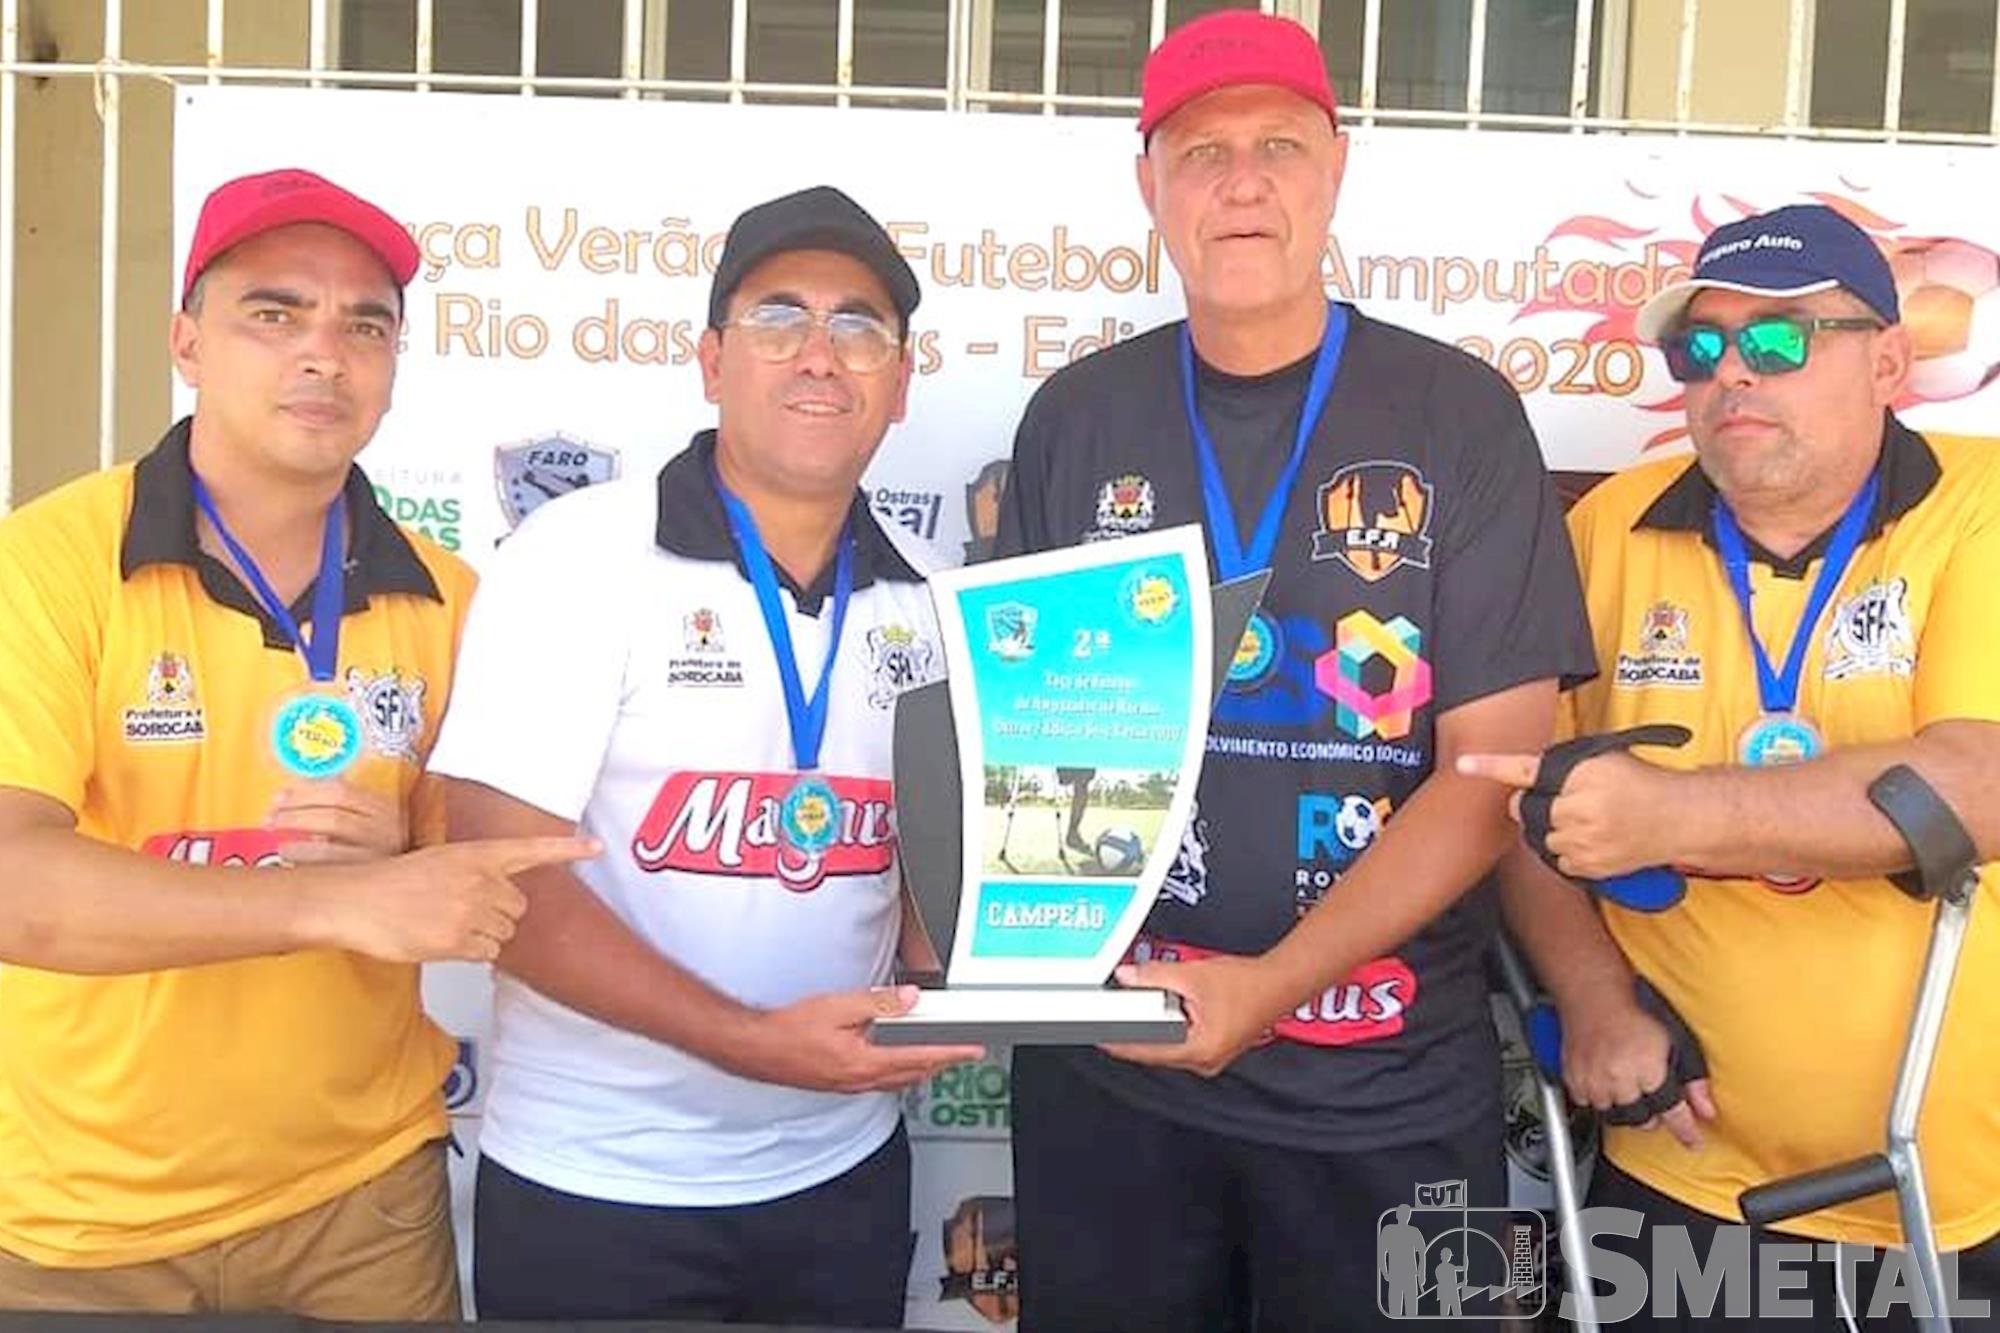 Divulgação / Sorocaba Futebol de Amputados , Time sorocabano de futebol de amputados é campeão da Taça Verão 